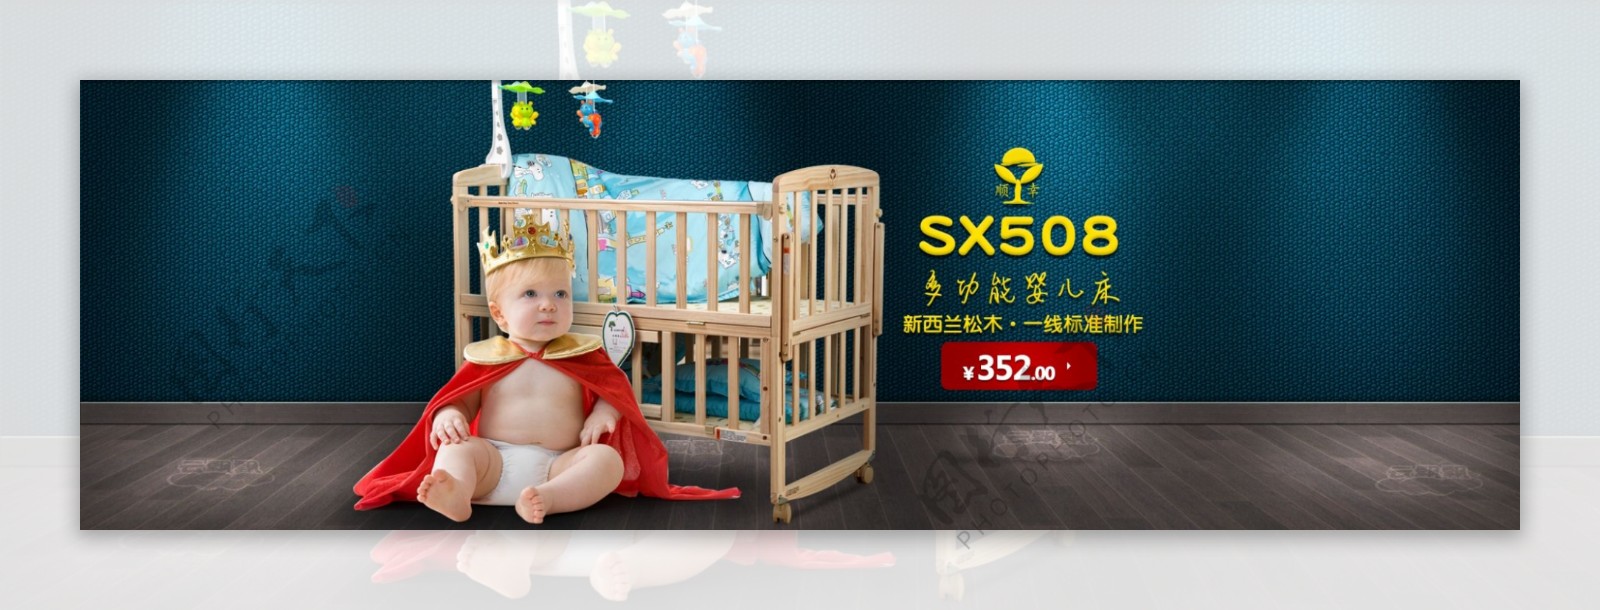 婴儿床玩具母婴海报